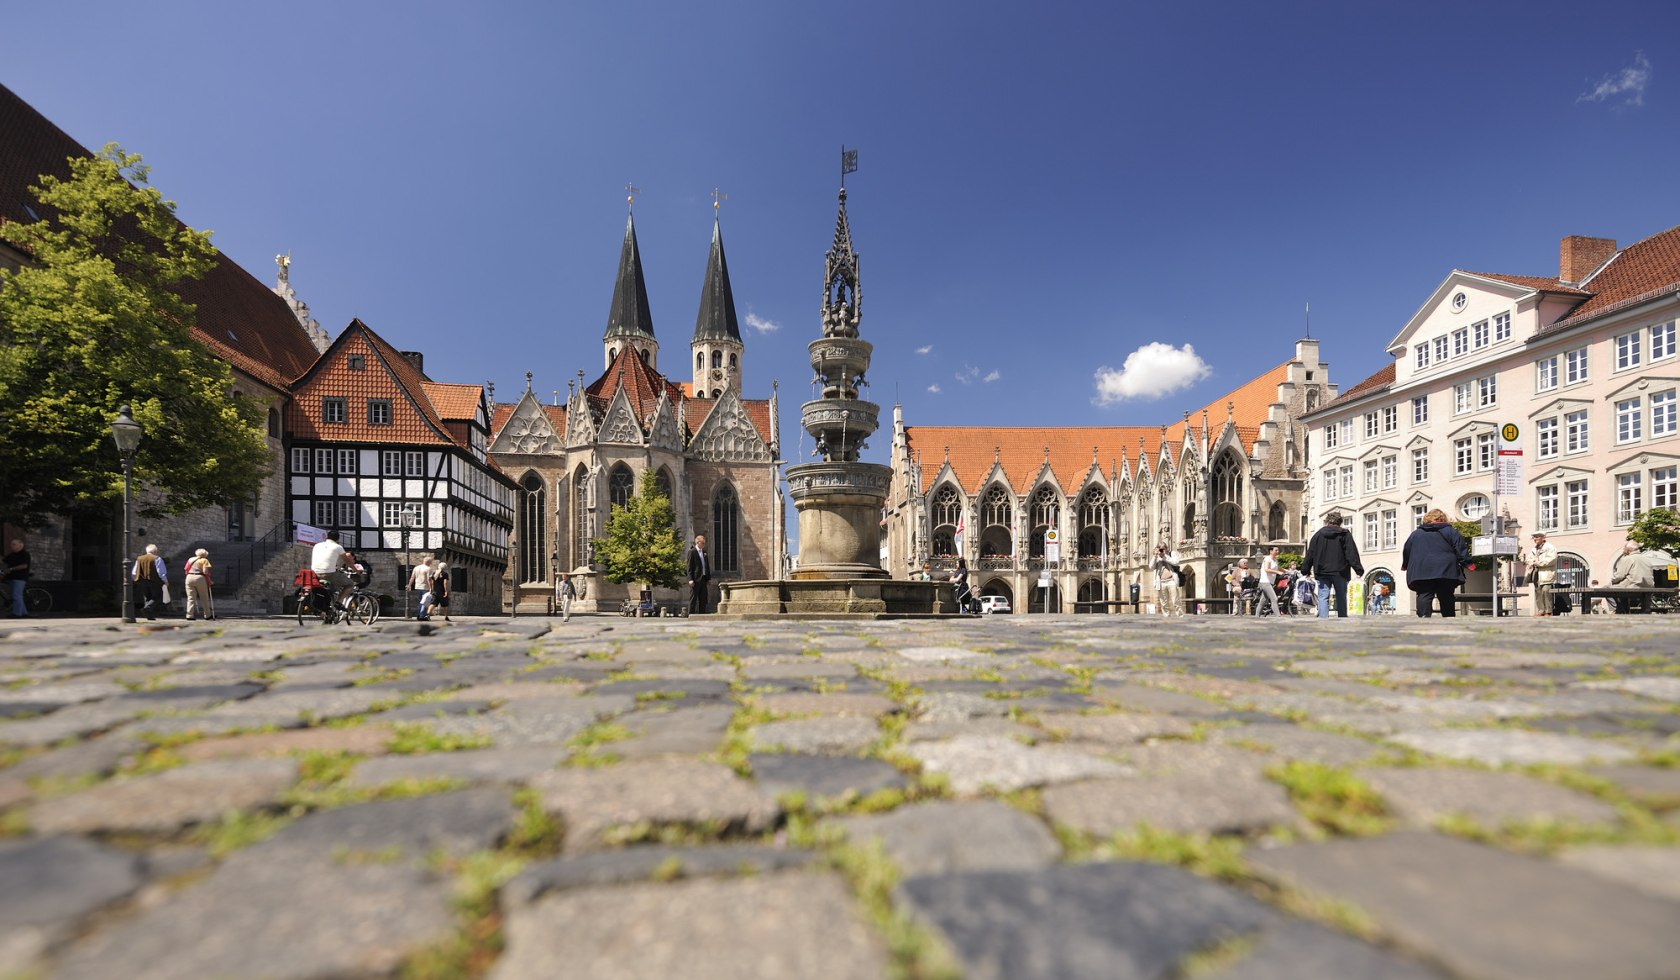 De oude stadsmarkt met zijn fontein, © Braunschweig Stadtmarketing GmbH / Daniel Möller